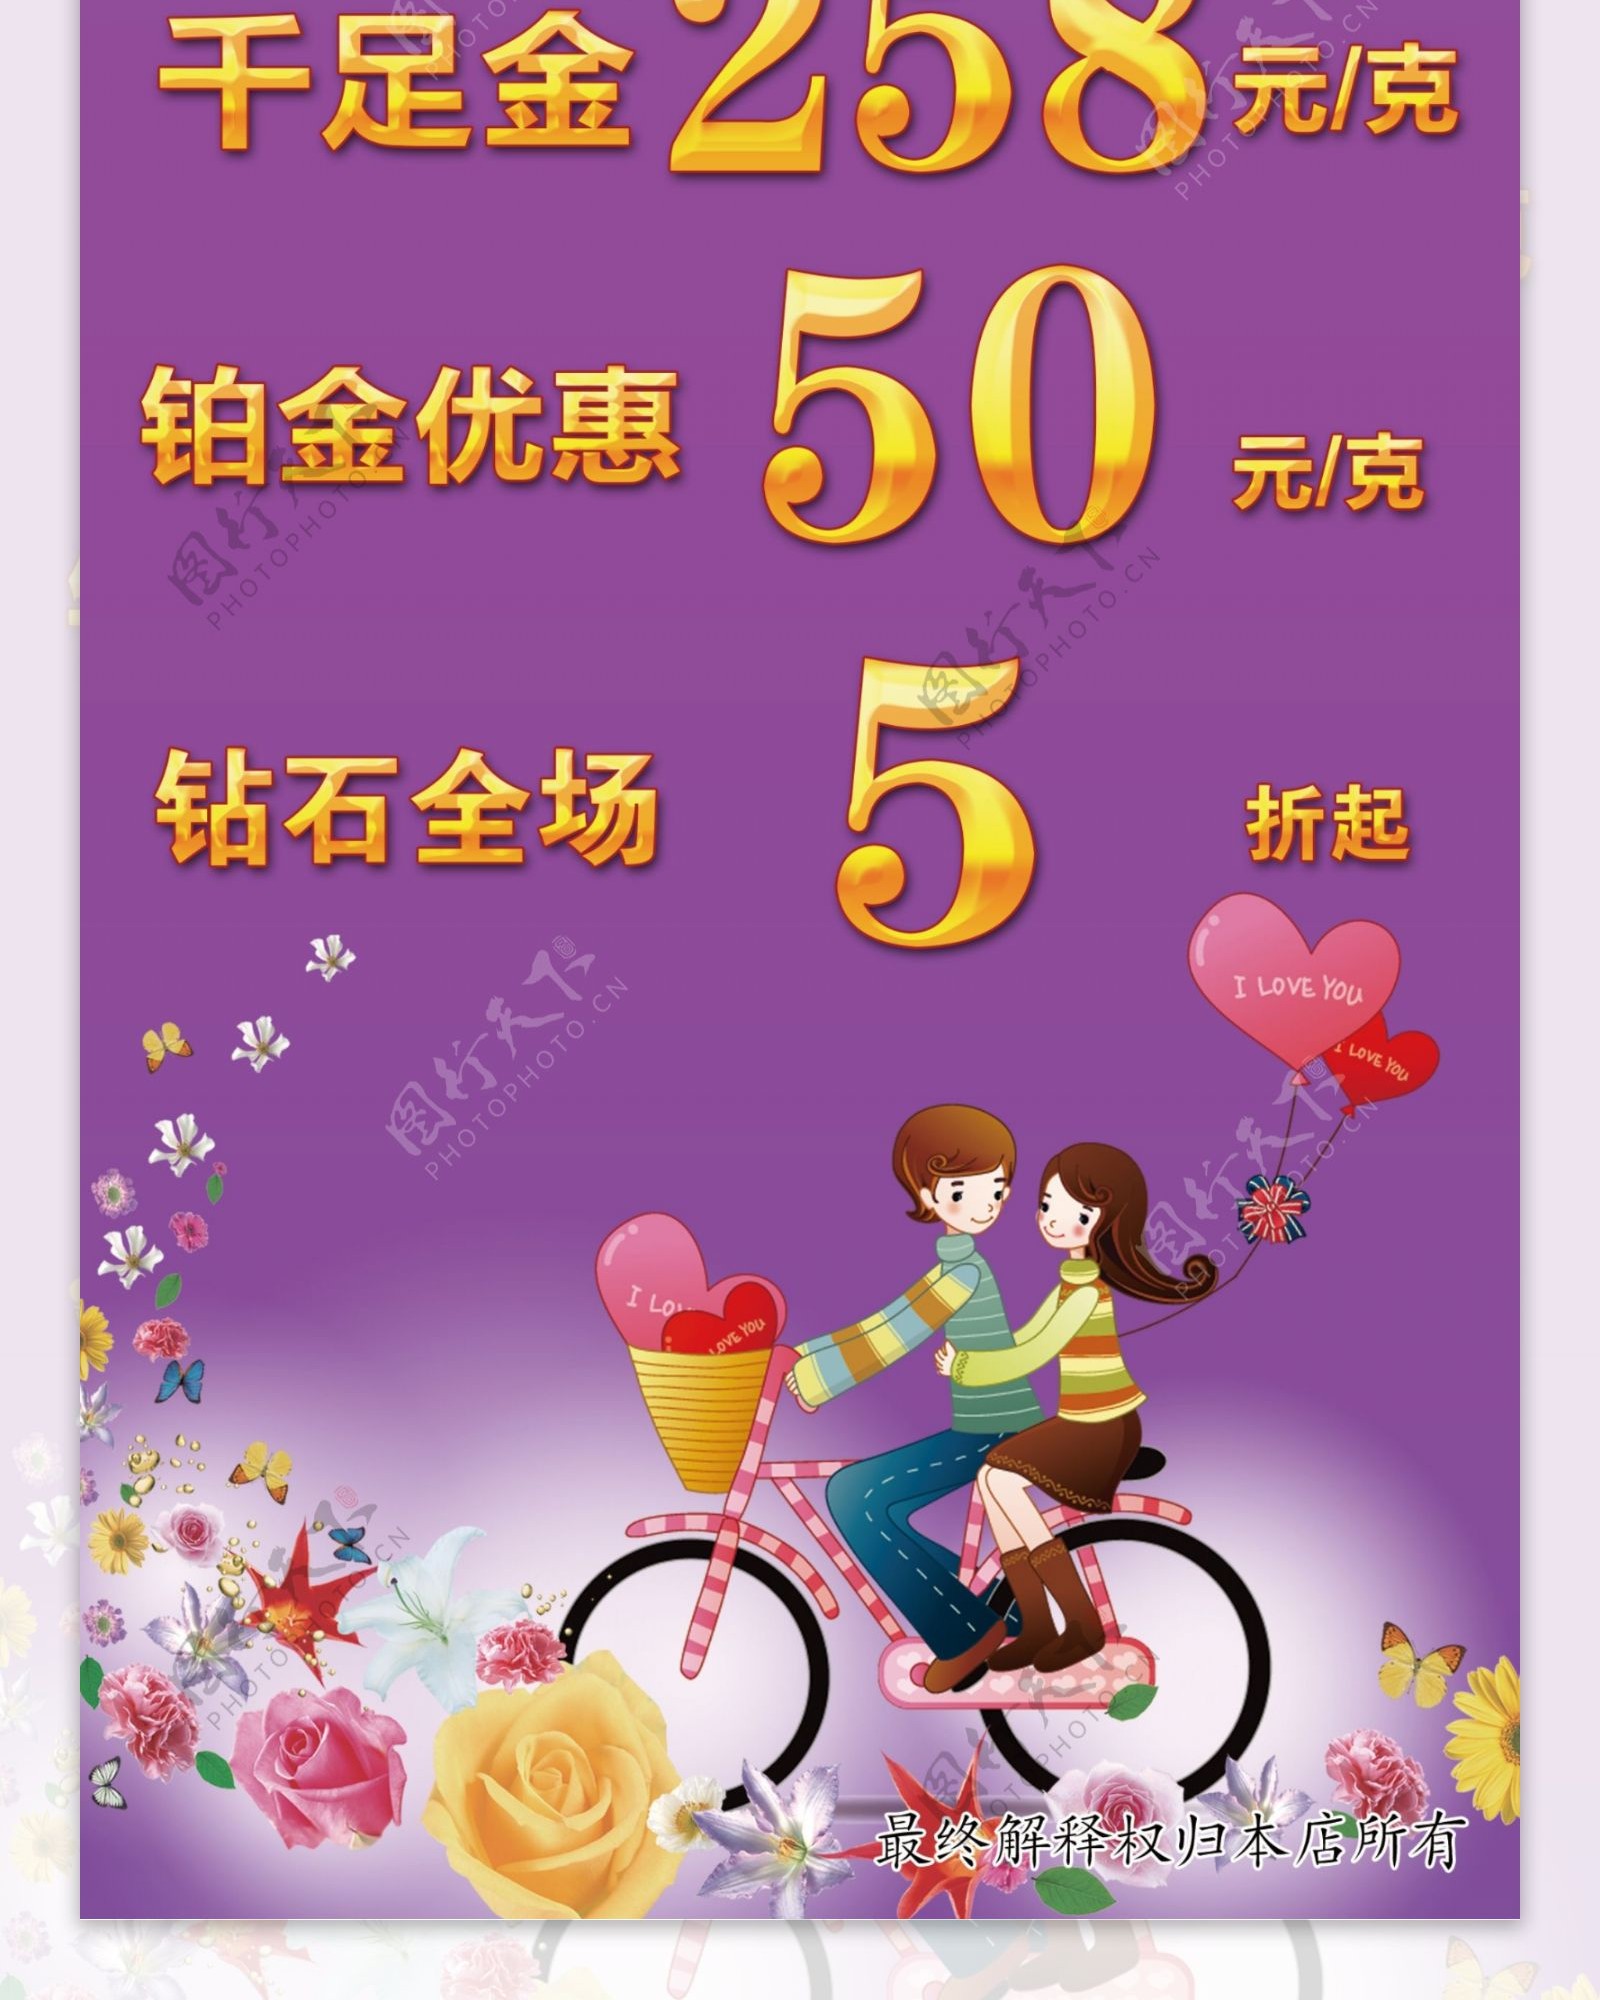 中国黄金情人节展架促销展架紫色情人节